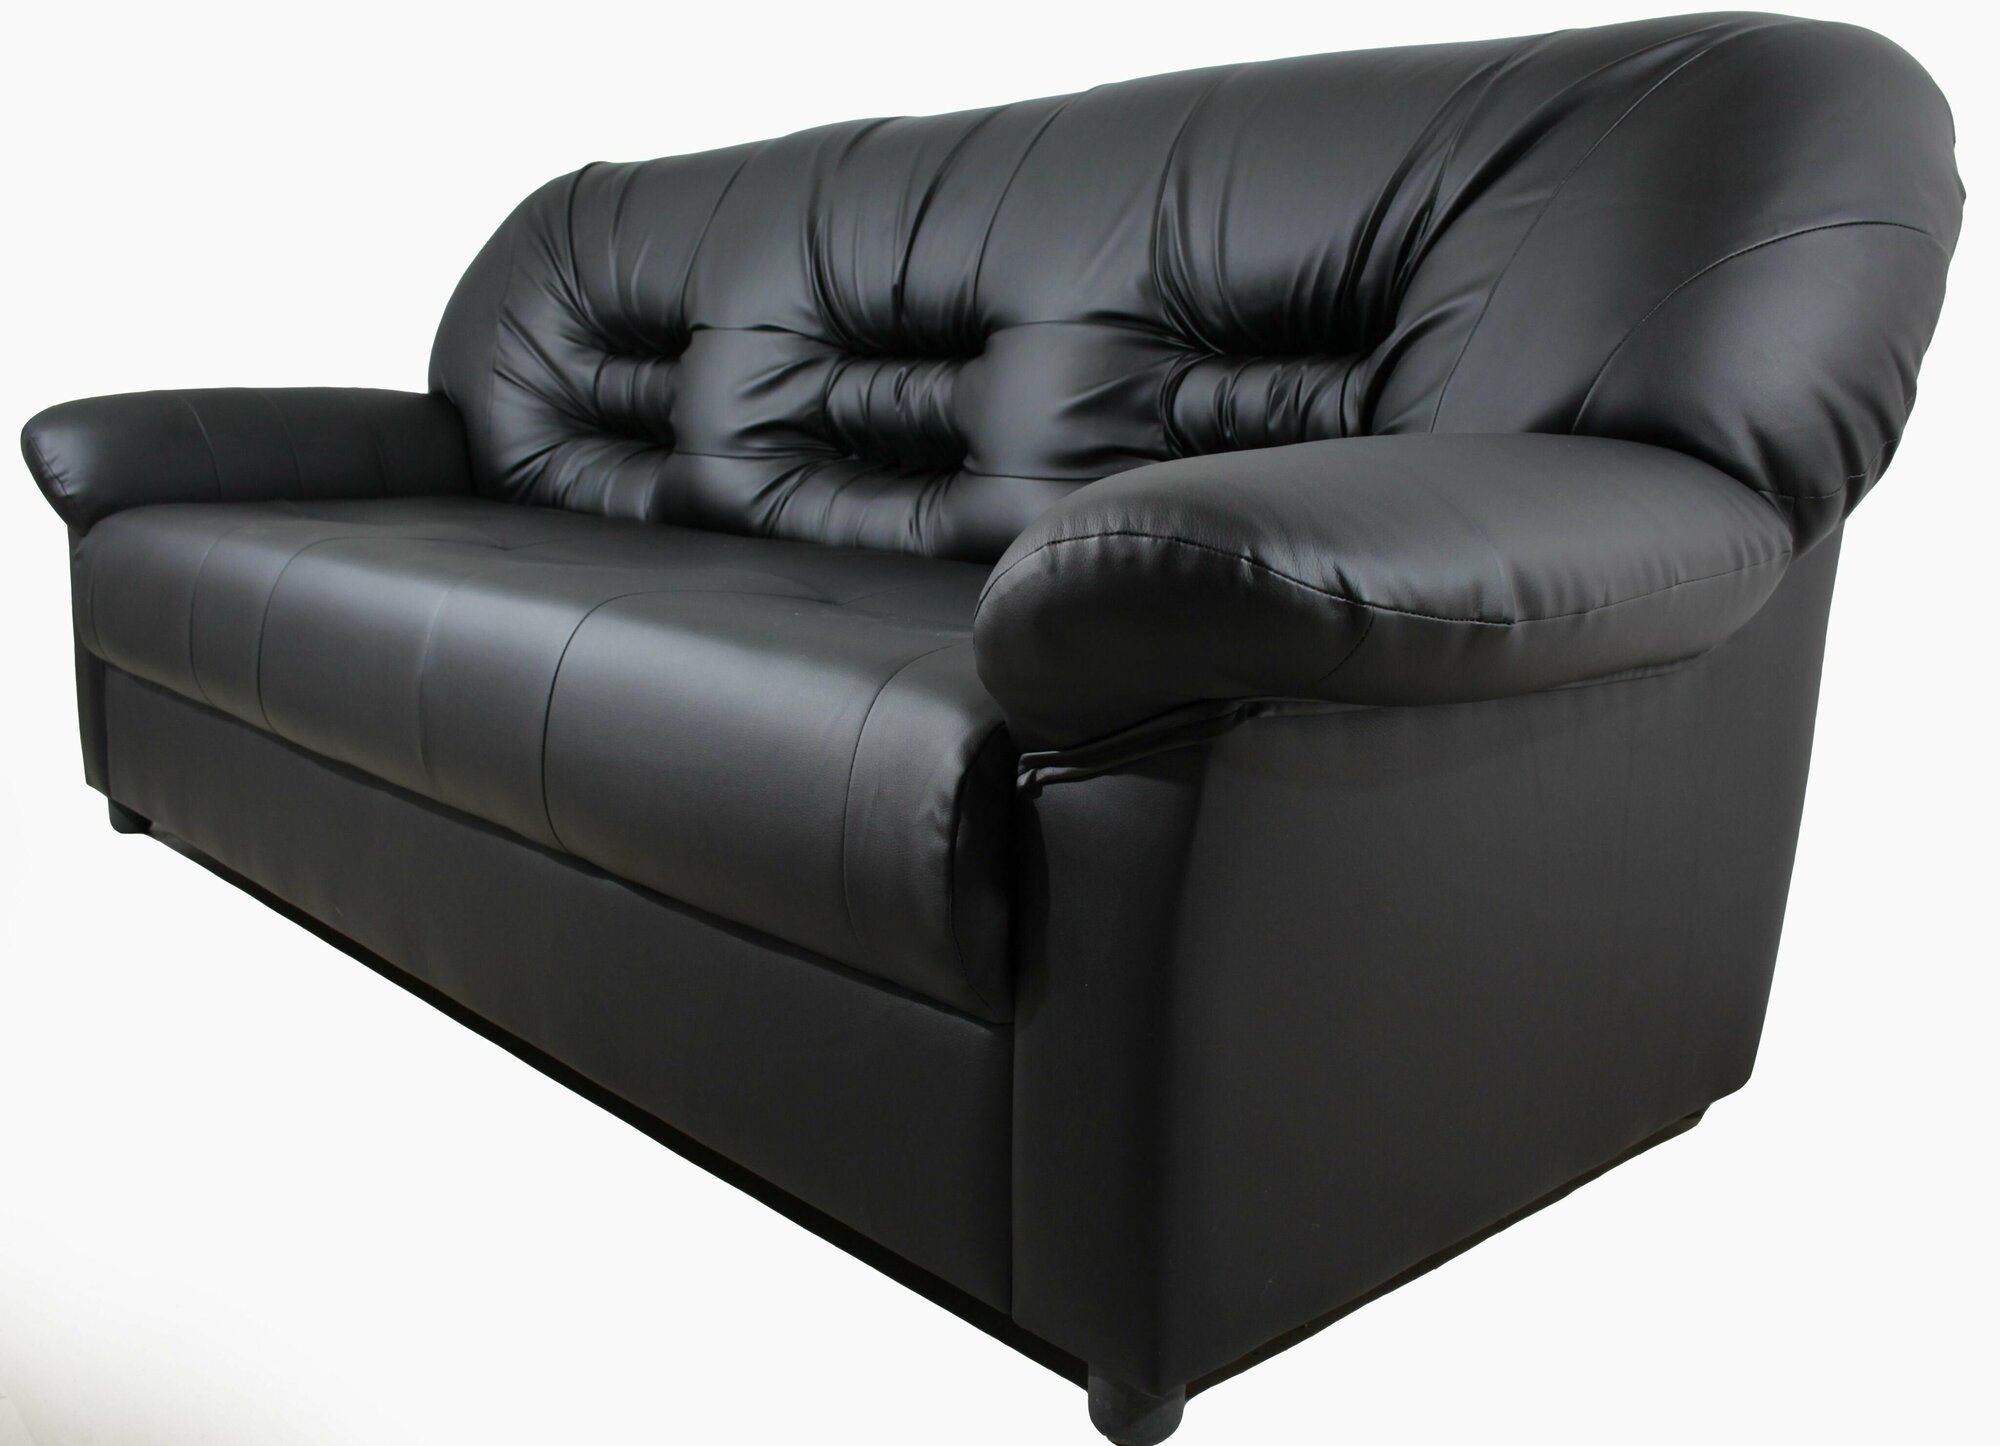 Трехместный прямой диван Виктория (Честер) для офиса, квартиры, дачи, Черный матовый, Механизм нераскладной, 195х85х80